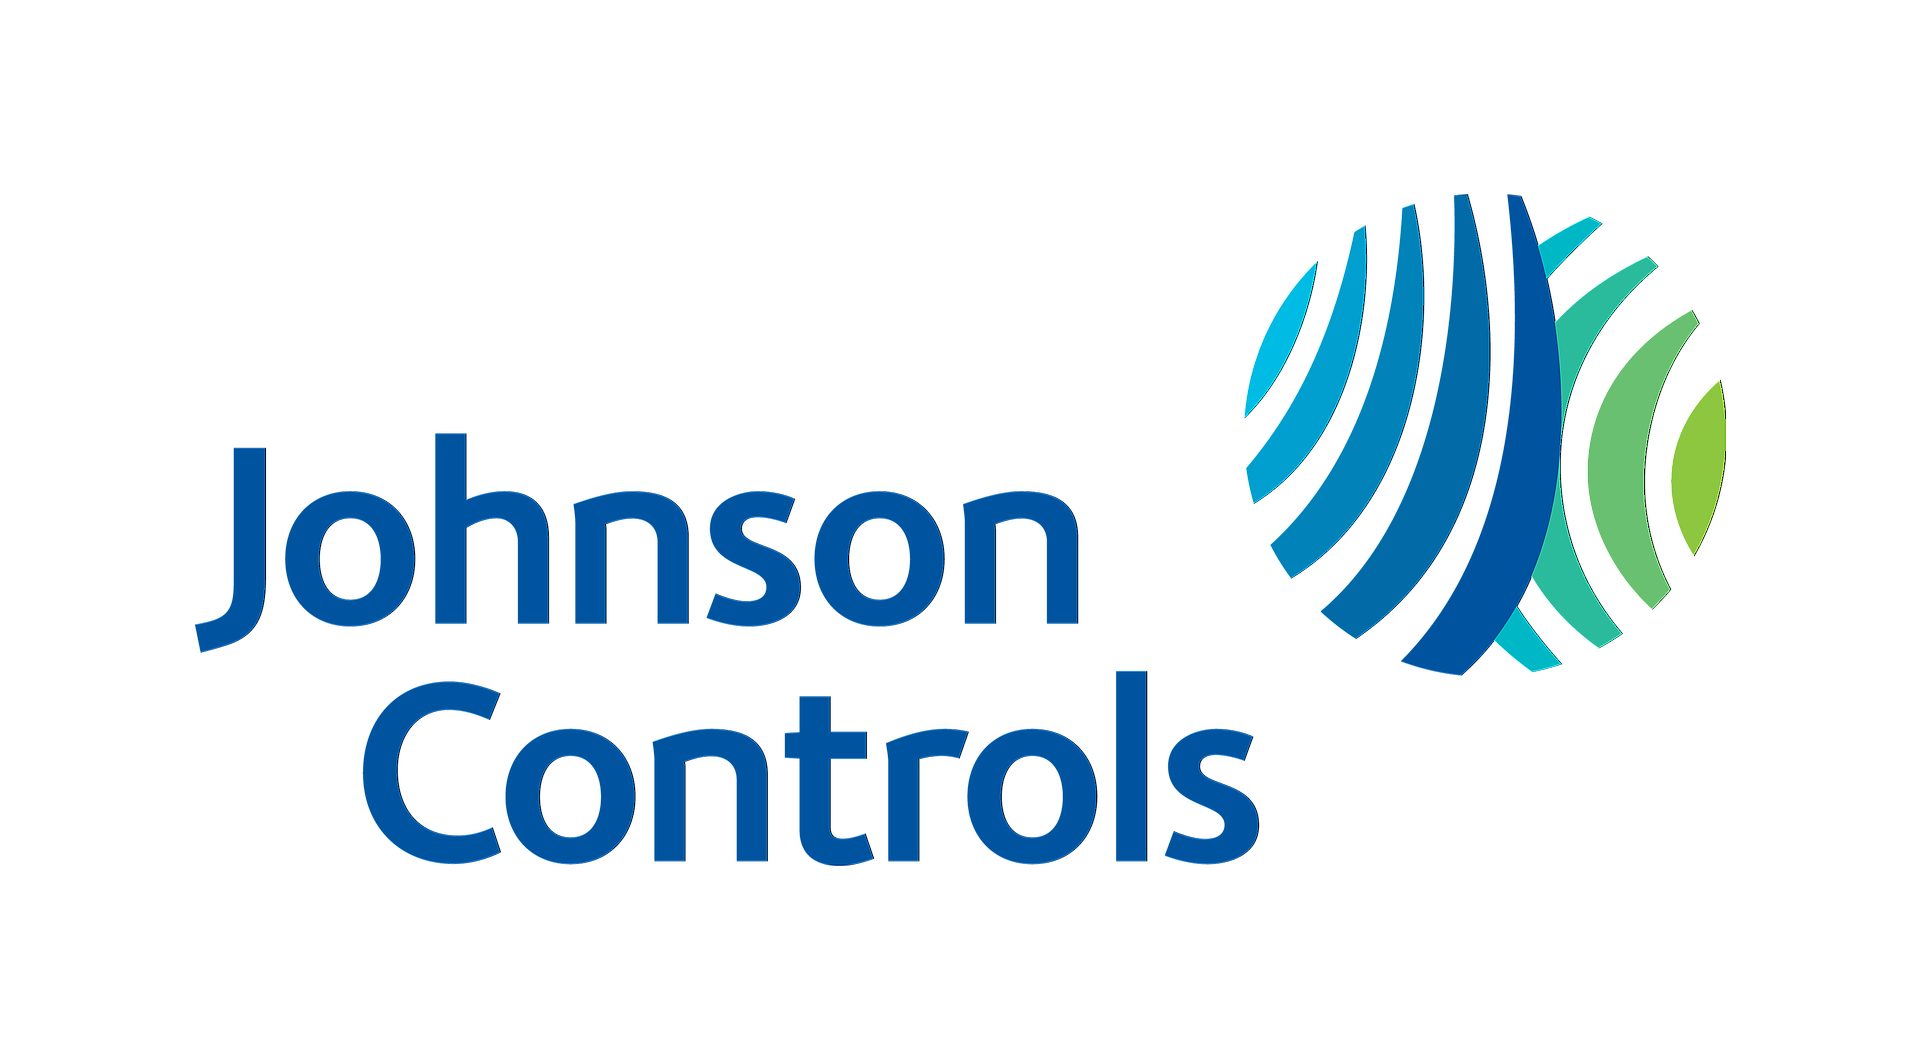 ジョンソンコントロールズのランサムウェア攻撃、51 万ドルの要求を伴うサイバー危機、DHS の懸念、および進行中の影響について学びます。